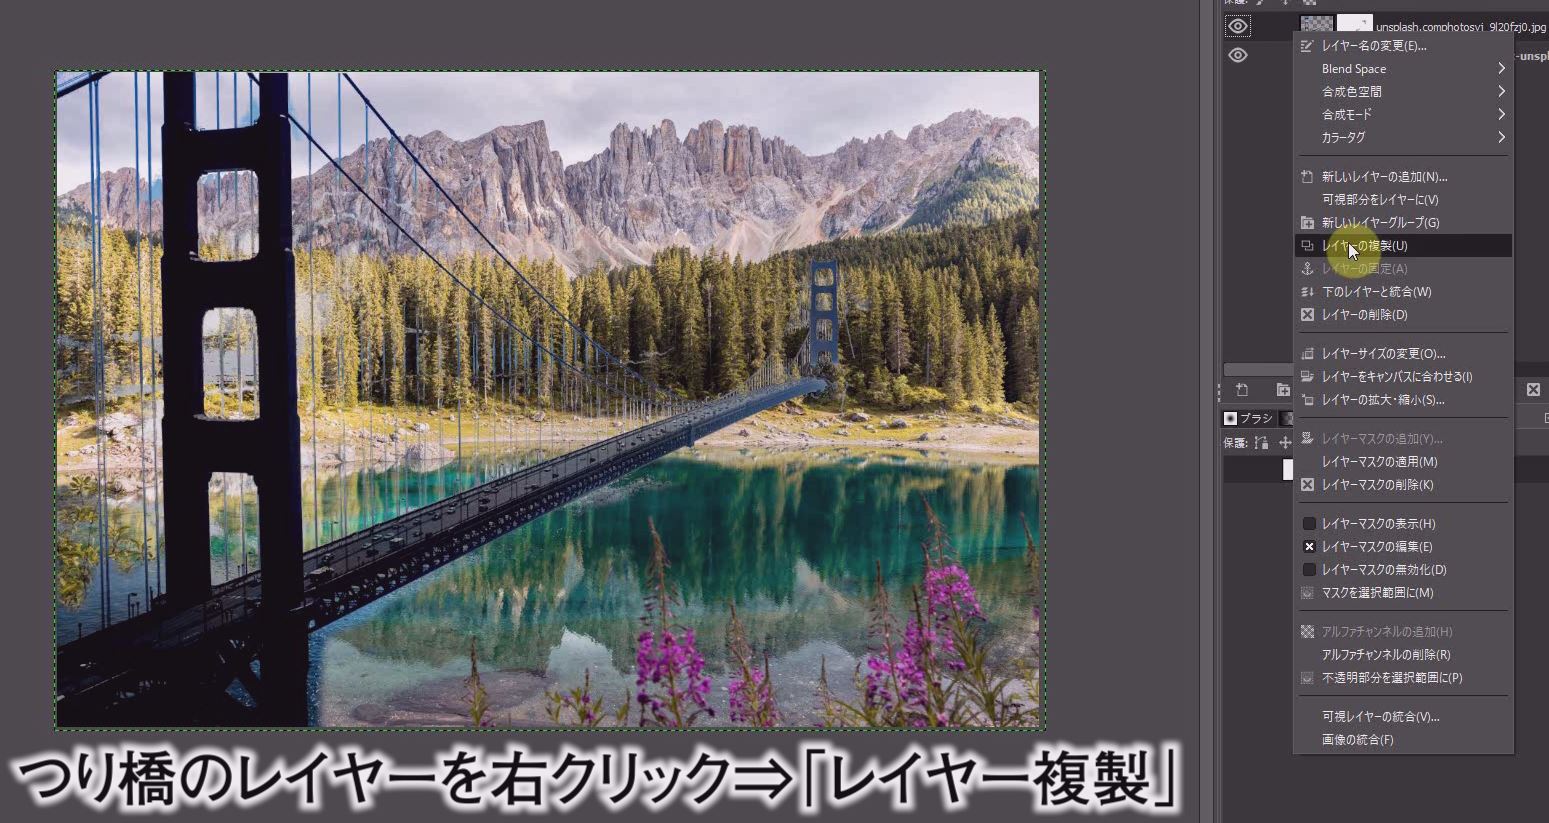 橋を湖に映り込ませます。 つり橋のレイヤーを複製します。 つり橋のレイヤーを右クリックして「レイヤー複製」を選択します。